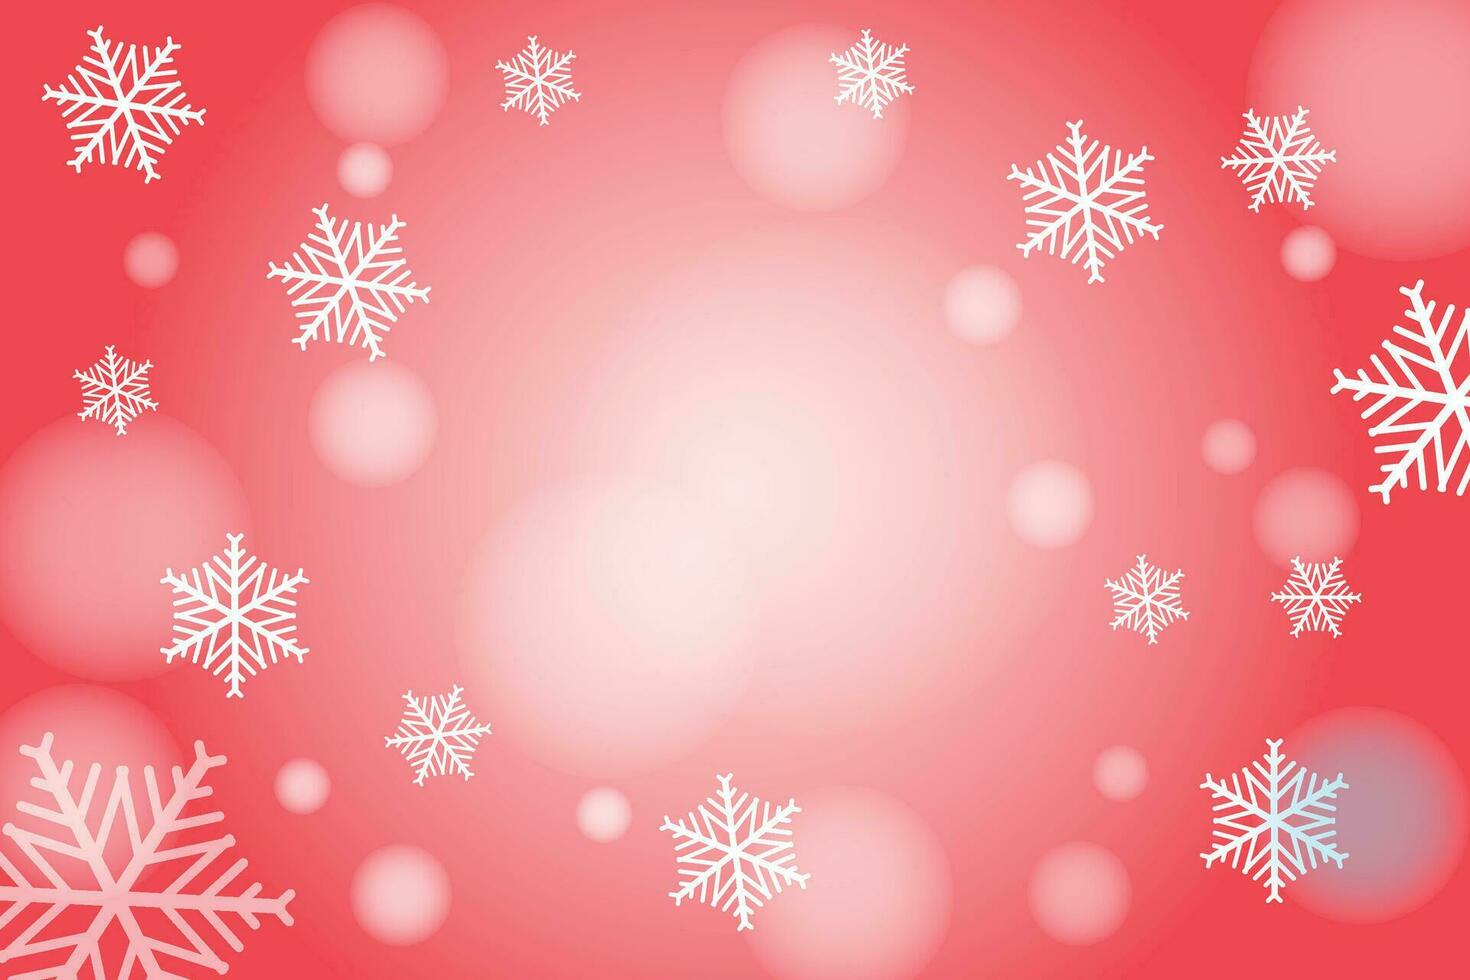 weiße und rote nahtlose Schneeflockengrenze, Weihnachtsdesign für Grußkarte. vektorillustration, frohe weihnachtsschneeflockenkopfzeile oder -fahne, tapete oder hintergrunddekor vektor